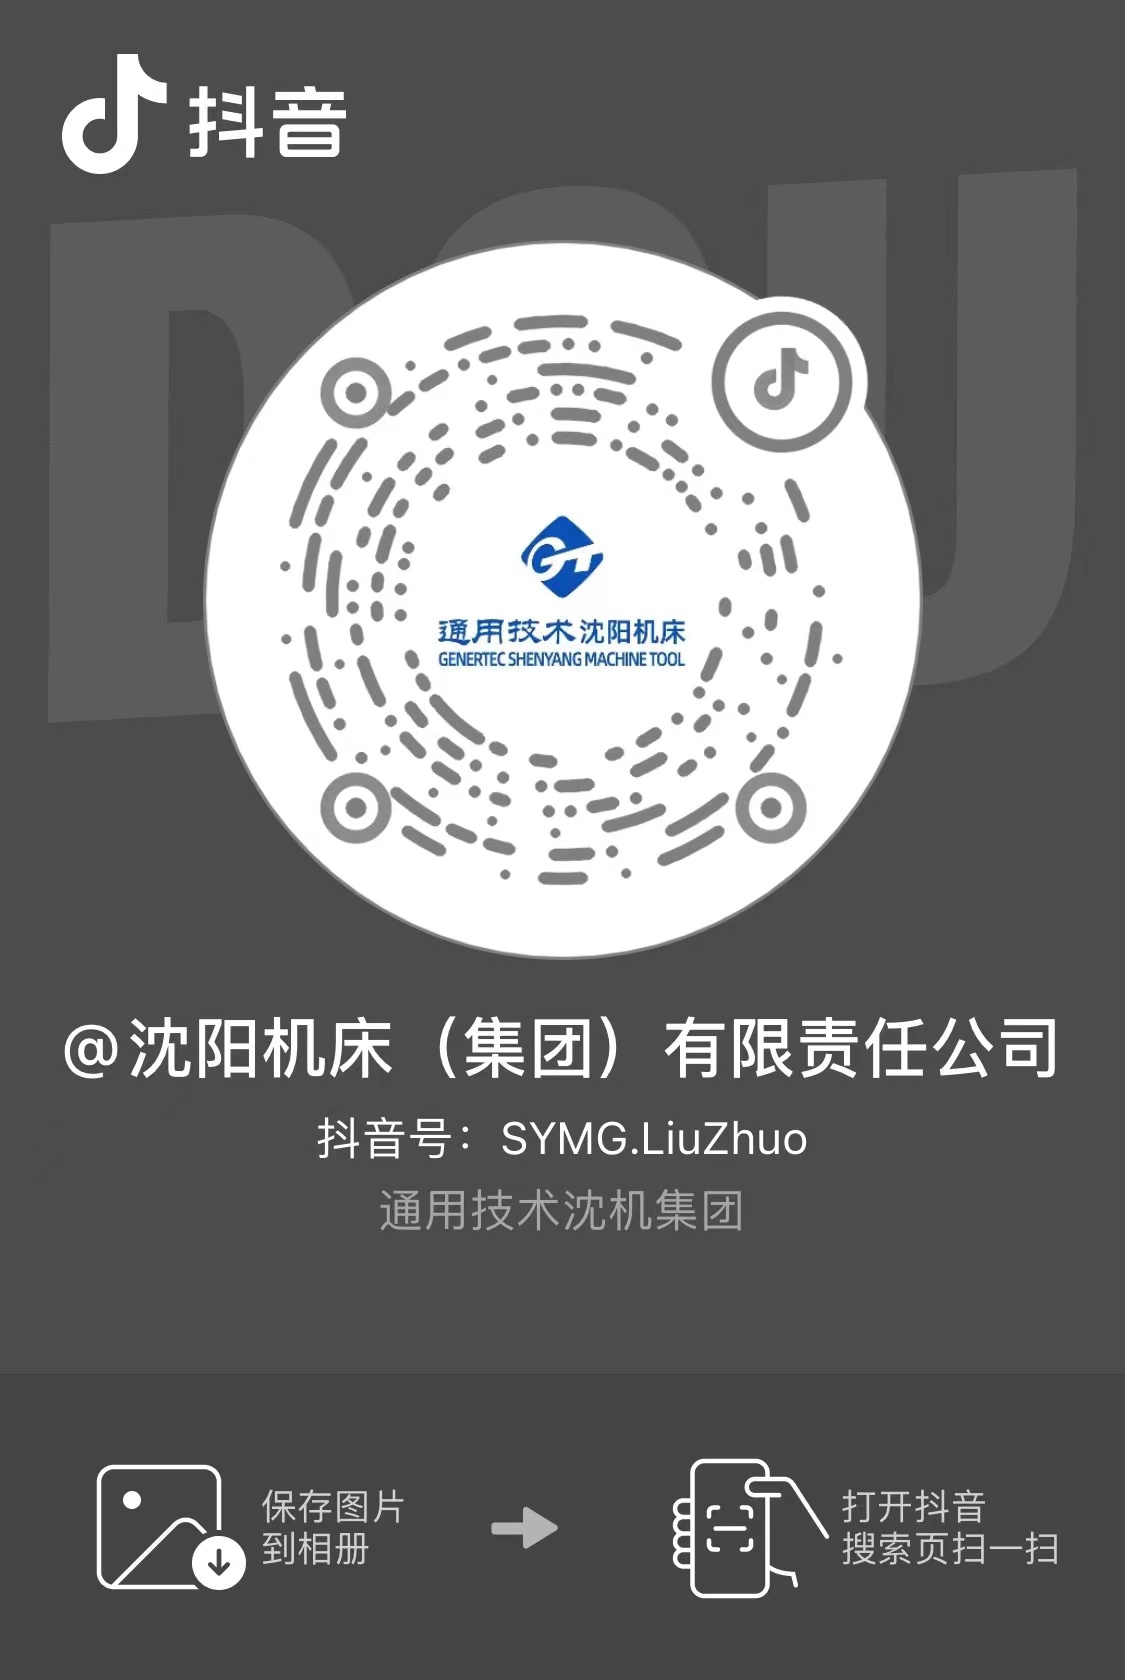 利来国际w66(中国)最老牌官网